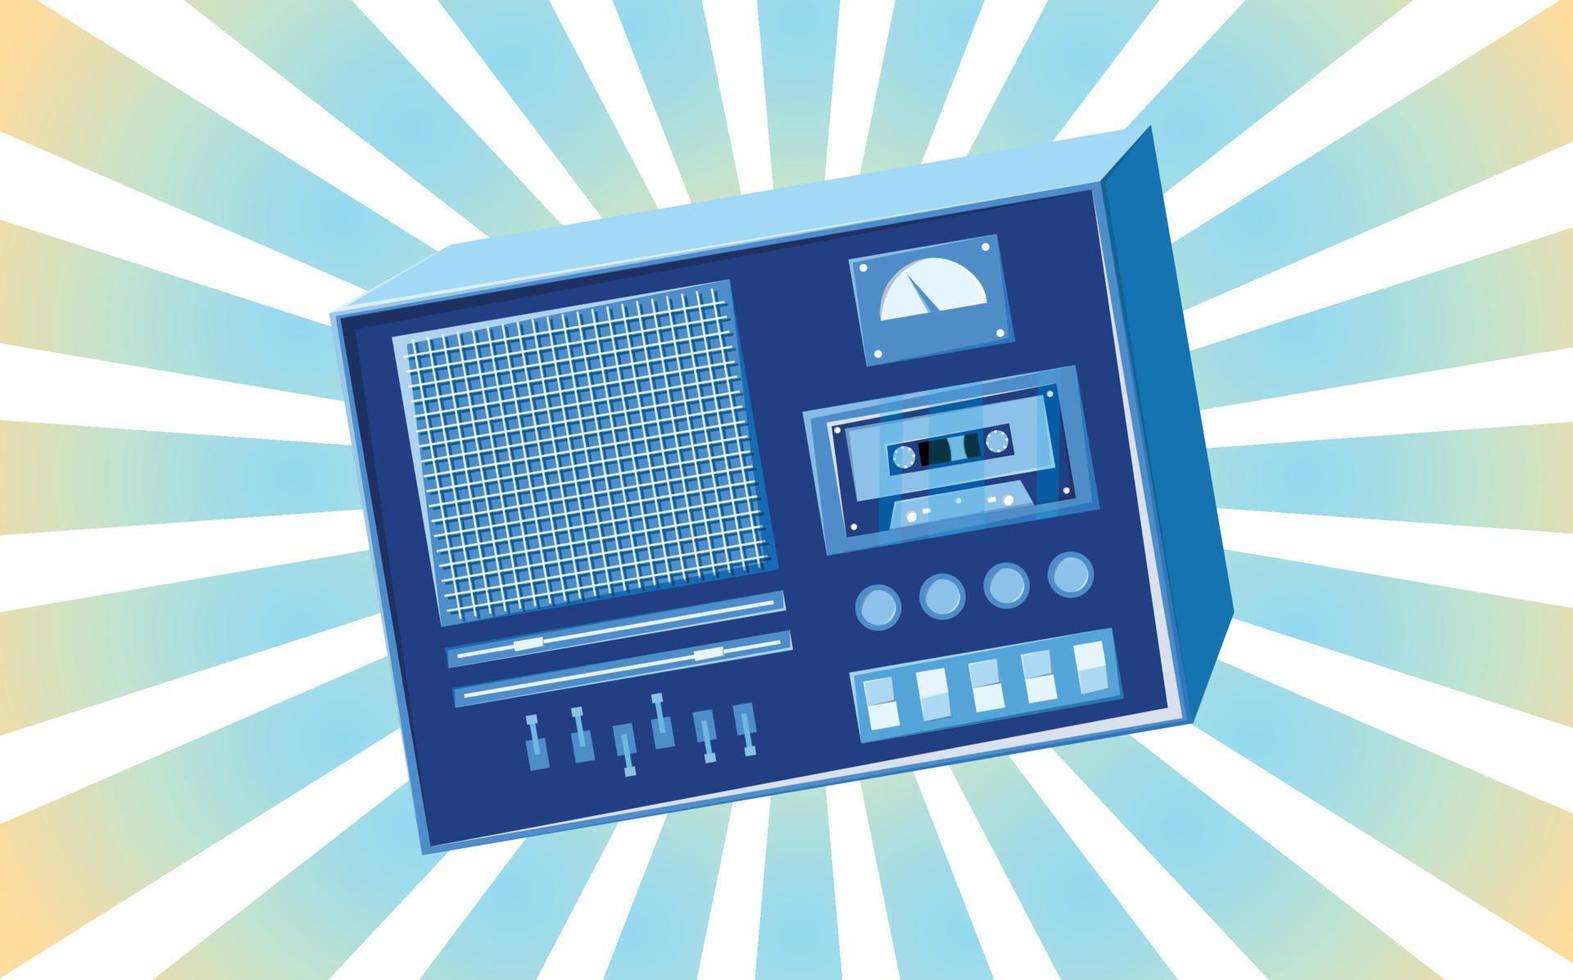 viejo afiche retro vintage con grabadora de casete de música con babbin de cinta magnética en carretes y altavoces de los años 70, 80, 90 el fondo de los rayos azules del sol. ilustración vectorial vector